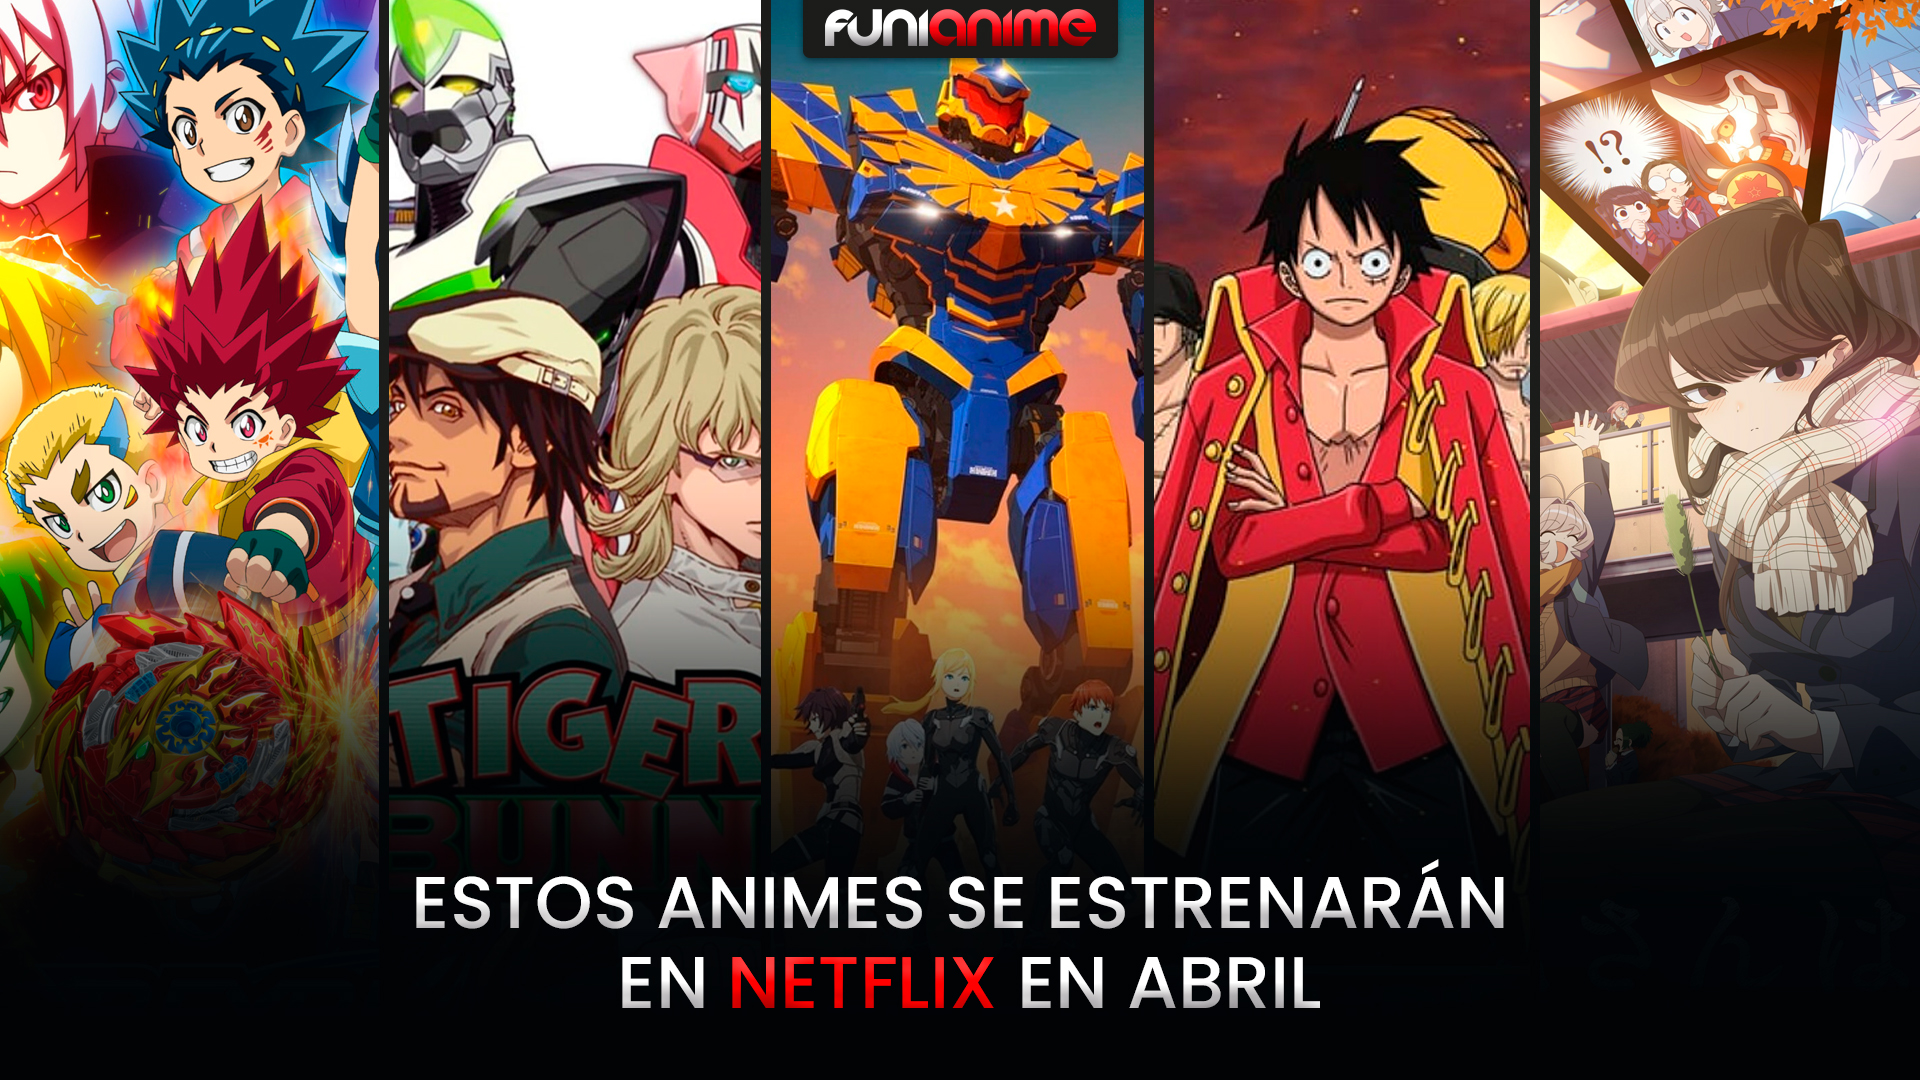 Estos animes se estrenarán en Netflix en abril - FUNiAnime LA